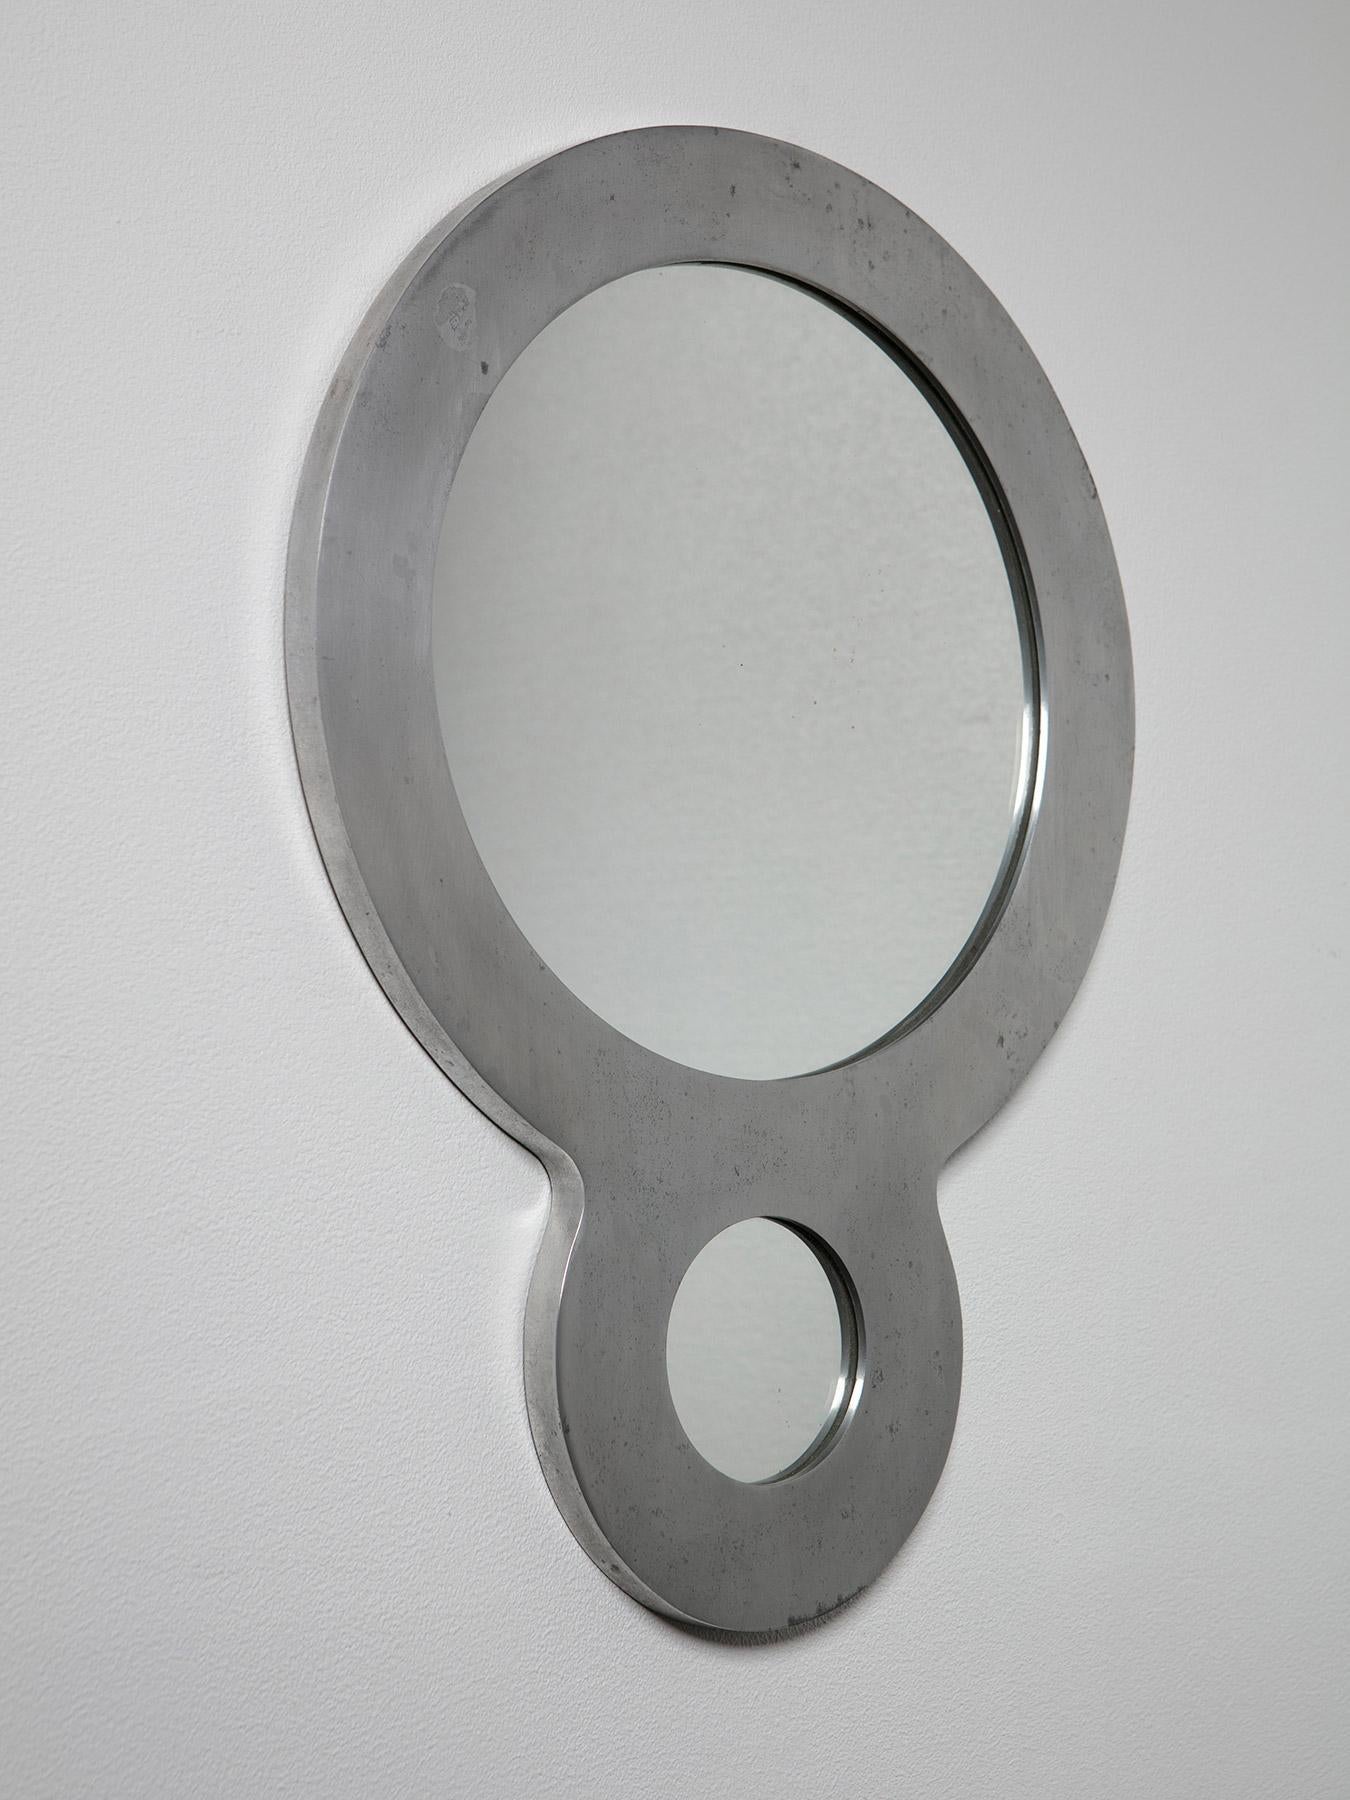 Rare miroir modèle 427 d'Albert Leclerc pour La Galleria Il Sestante. 
Faisant partie d'une collection d'objets en aluminium, la pièce peut être utilisée sur les deux voies verticales présentées. 